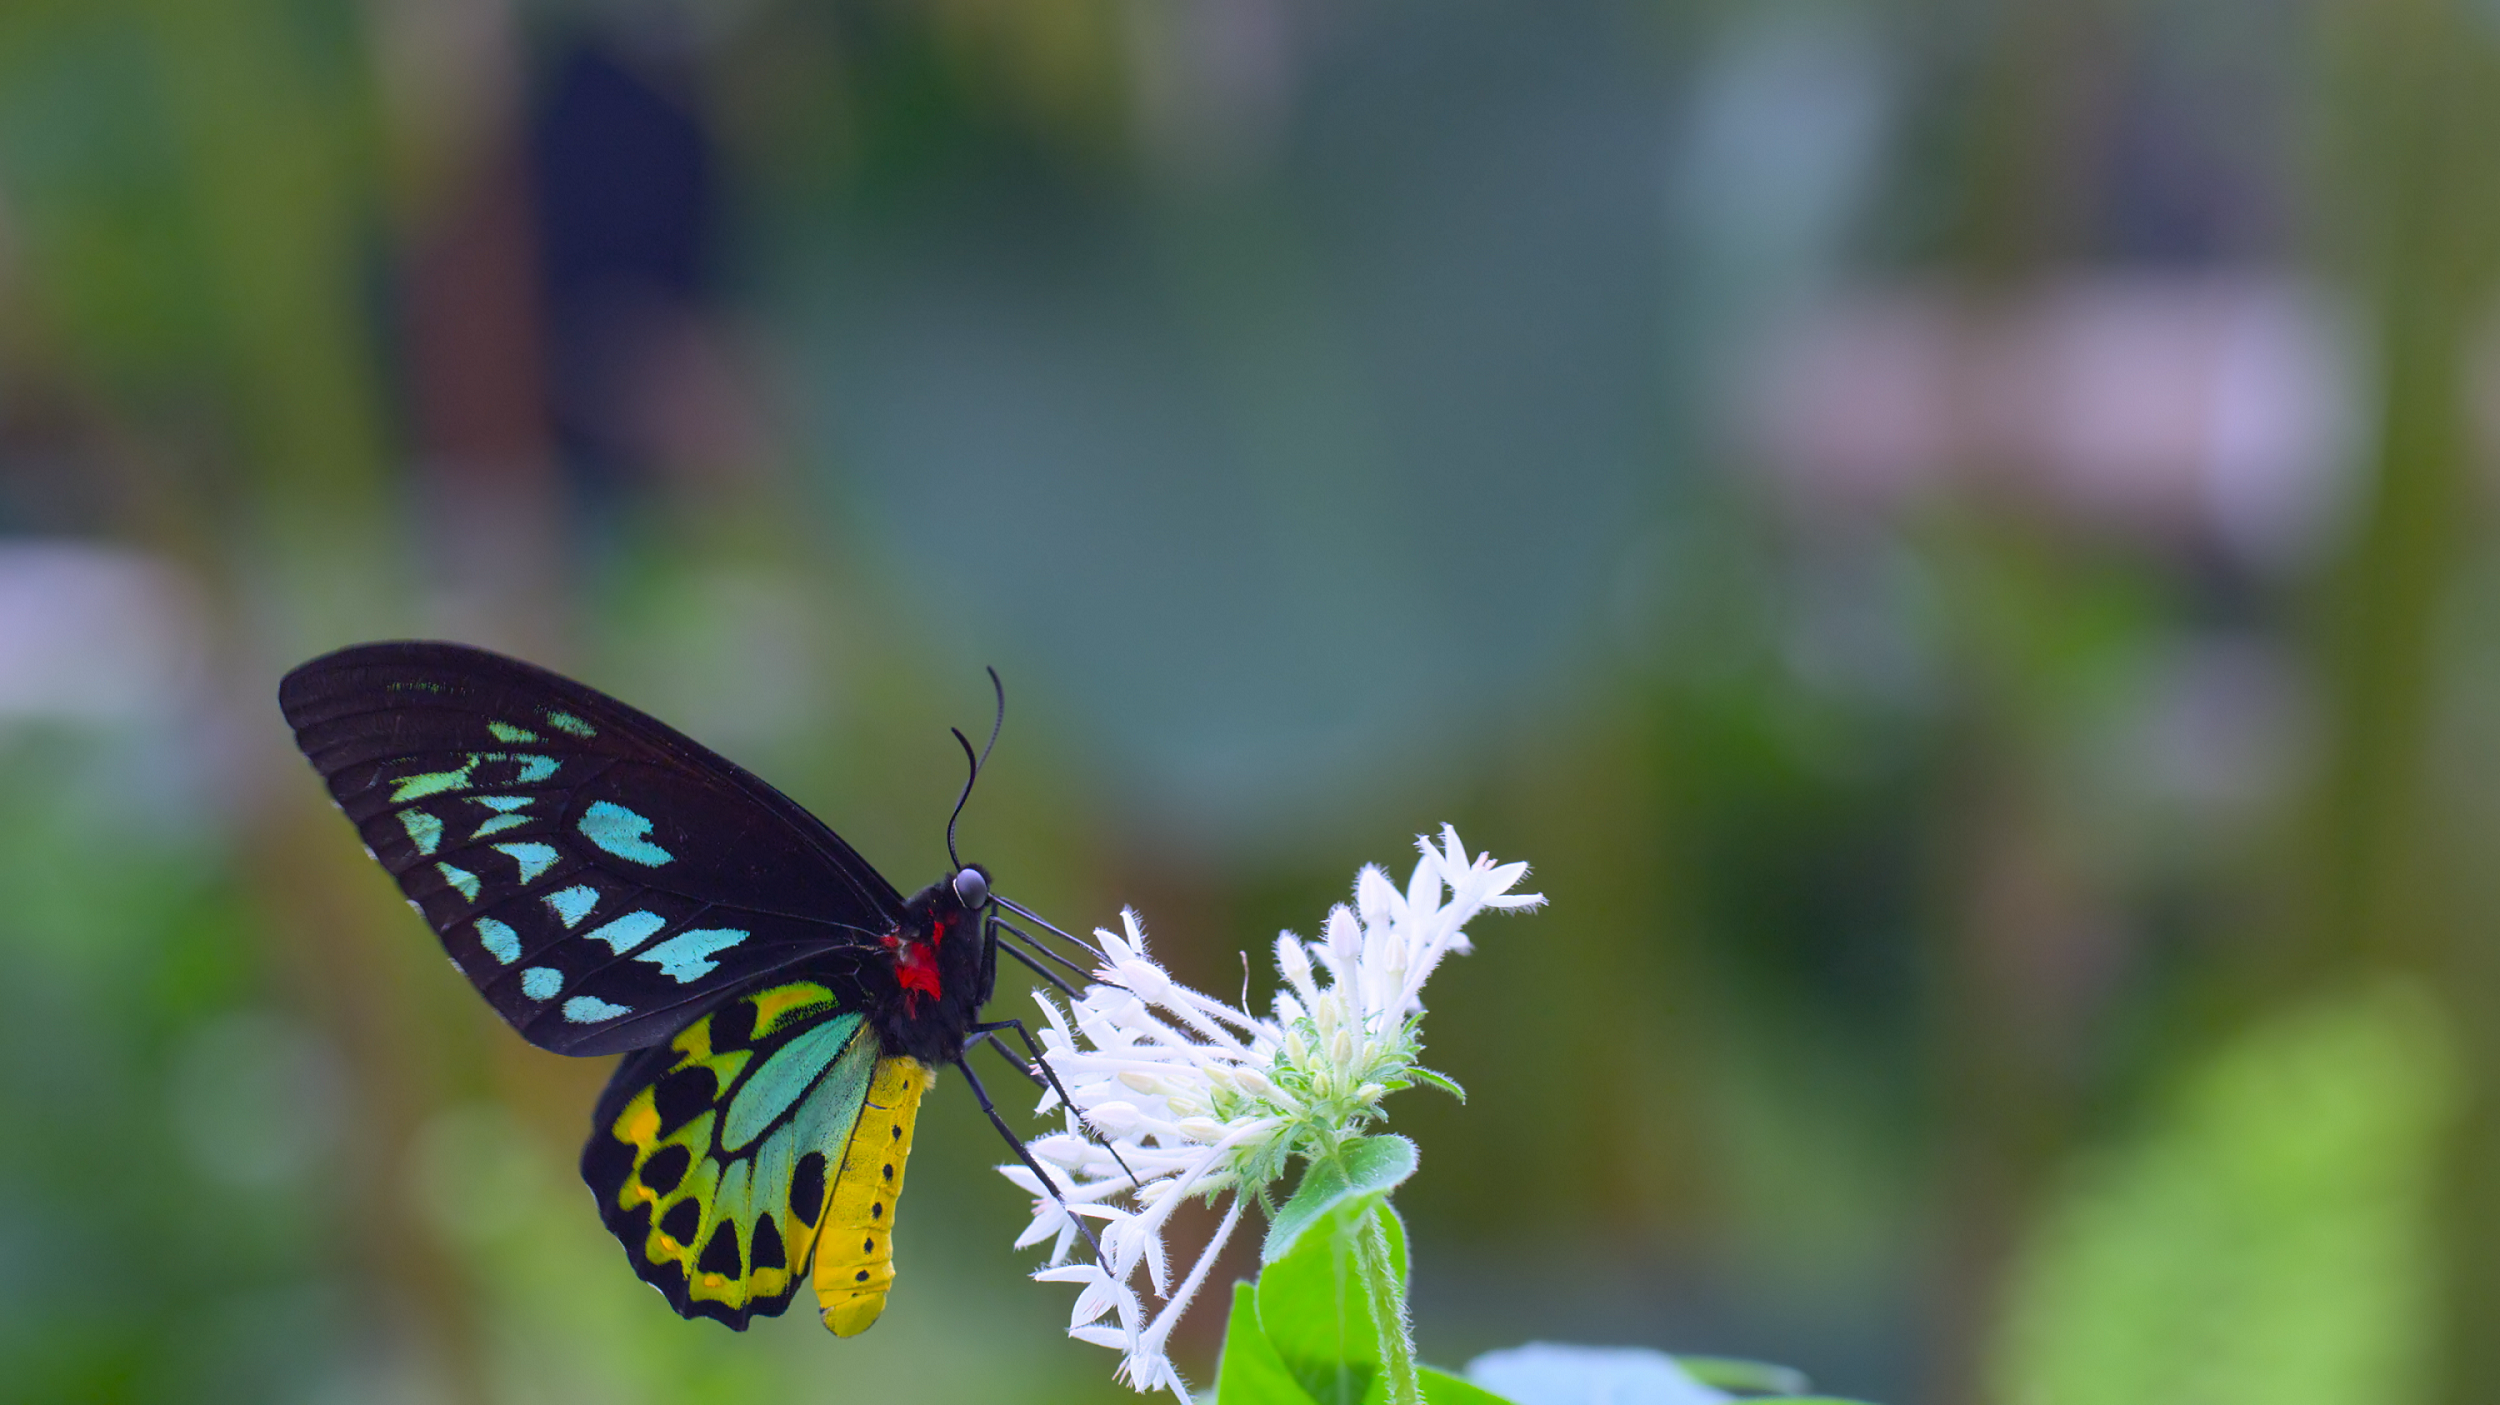 香港太空館天象廳十月一日（星期日）起放映全新球幕電影《動物王國》，帶領觀眾探索六個動物家族的棲息地。圖示一隻蝴蝶正在吸食花蜜，並且在花朵之間傳播花粉，協助植物的繁衍。（圖片來源：DEFINITION FILMS）